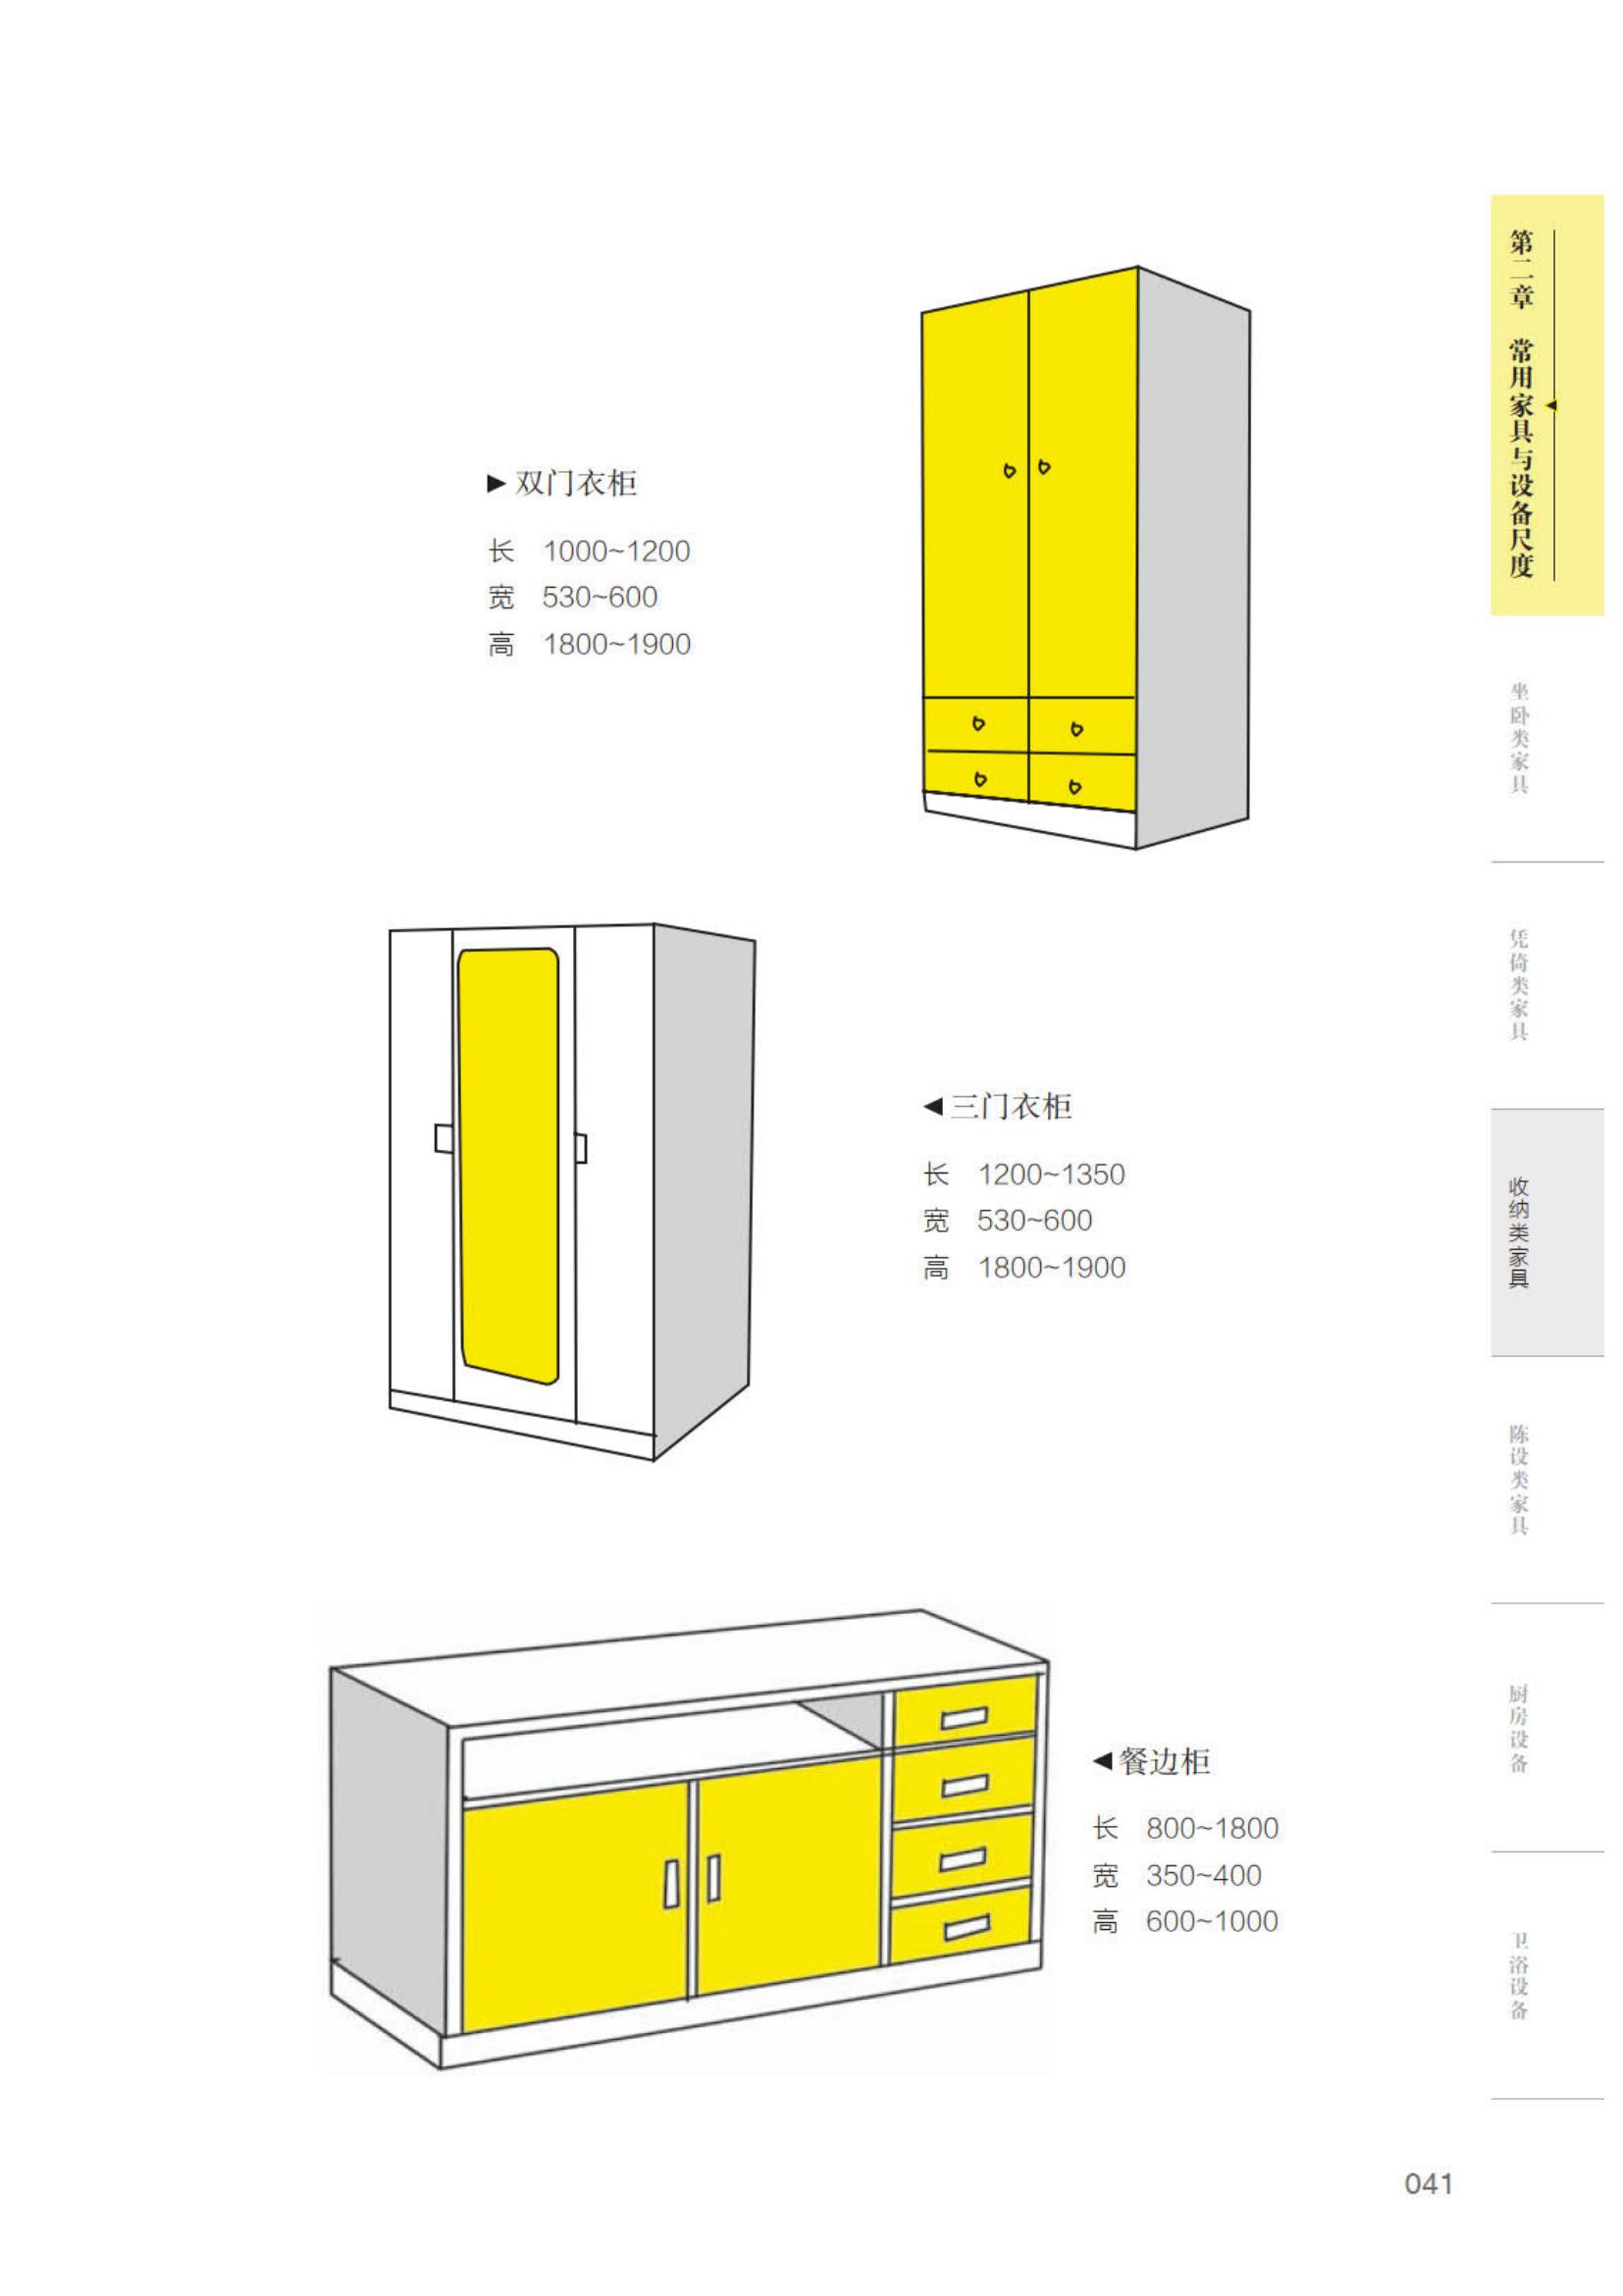 室内设计数据手册空间与尺度_48.jpg